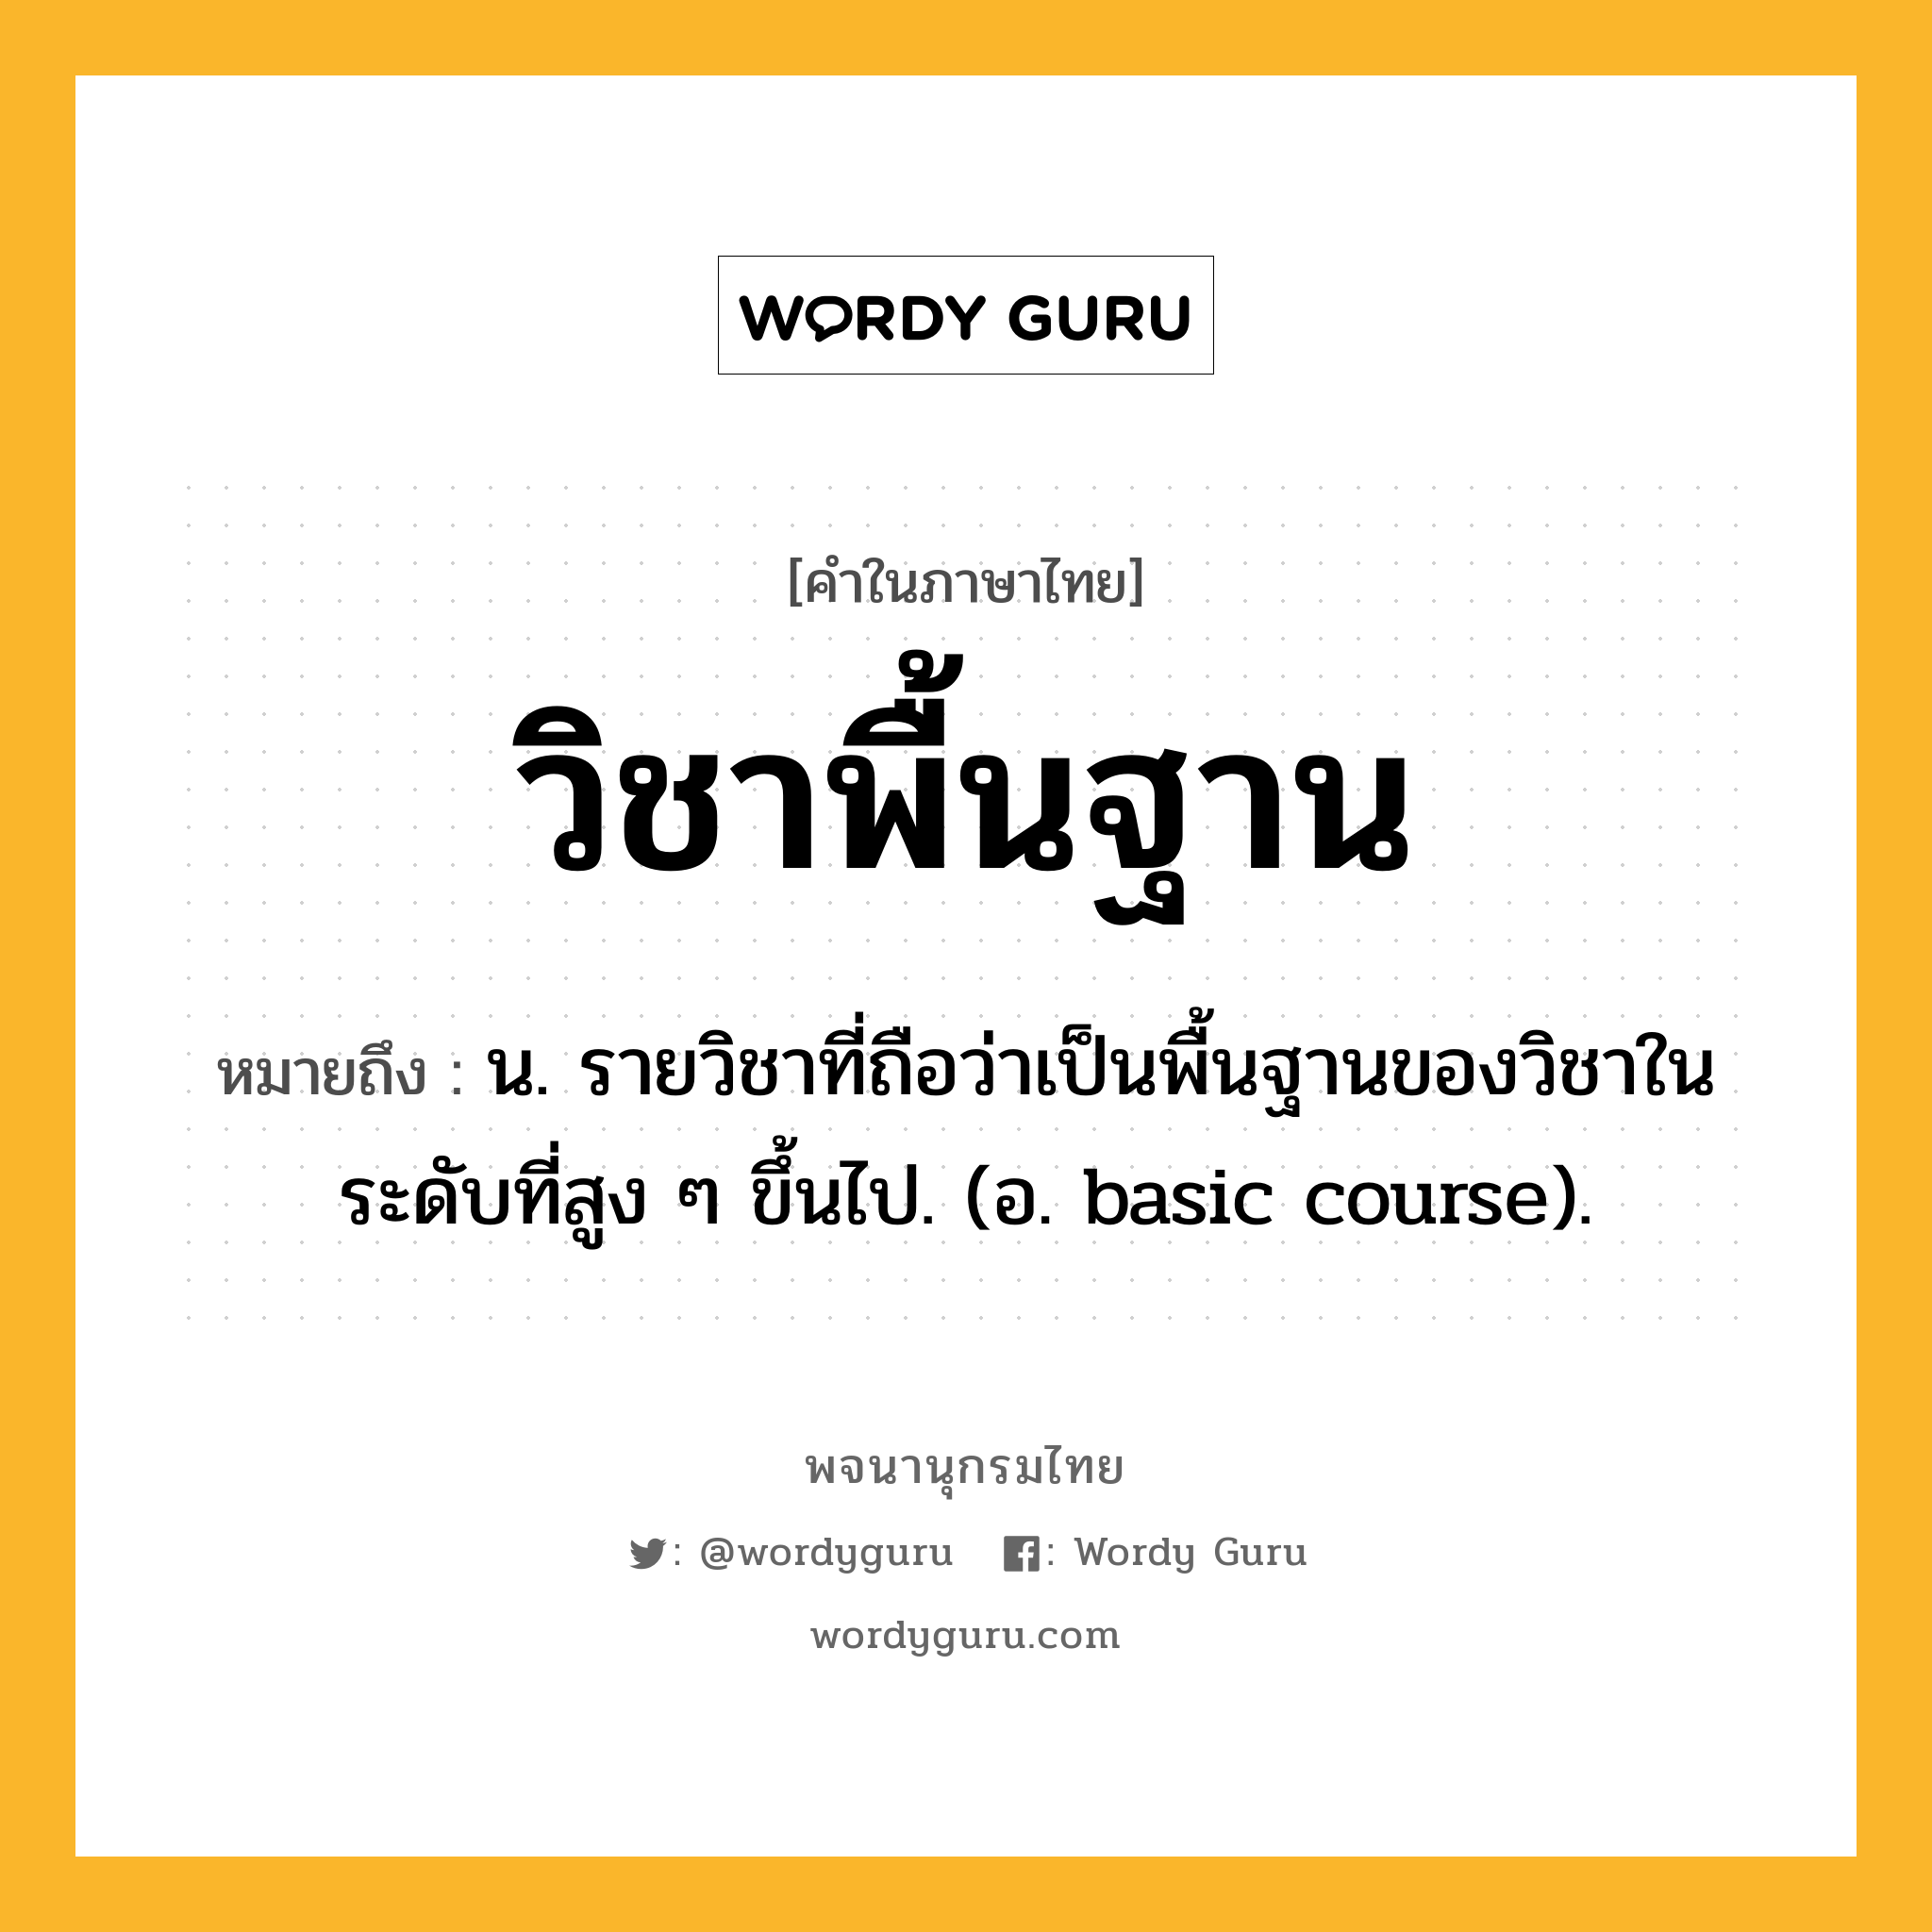 วิชาพื้นฐาน ความหมาย หมายถึงอะไร?, คำในภาษาไทย วิชาพื้นฐาน หมายถึง น. รายวิชาที่ถือว่าเป็นพื้นฐานของวิชาในระดับที่สูง ๆ ขึ้นไป. (อ. basic course).